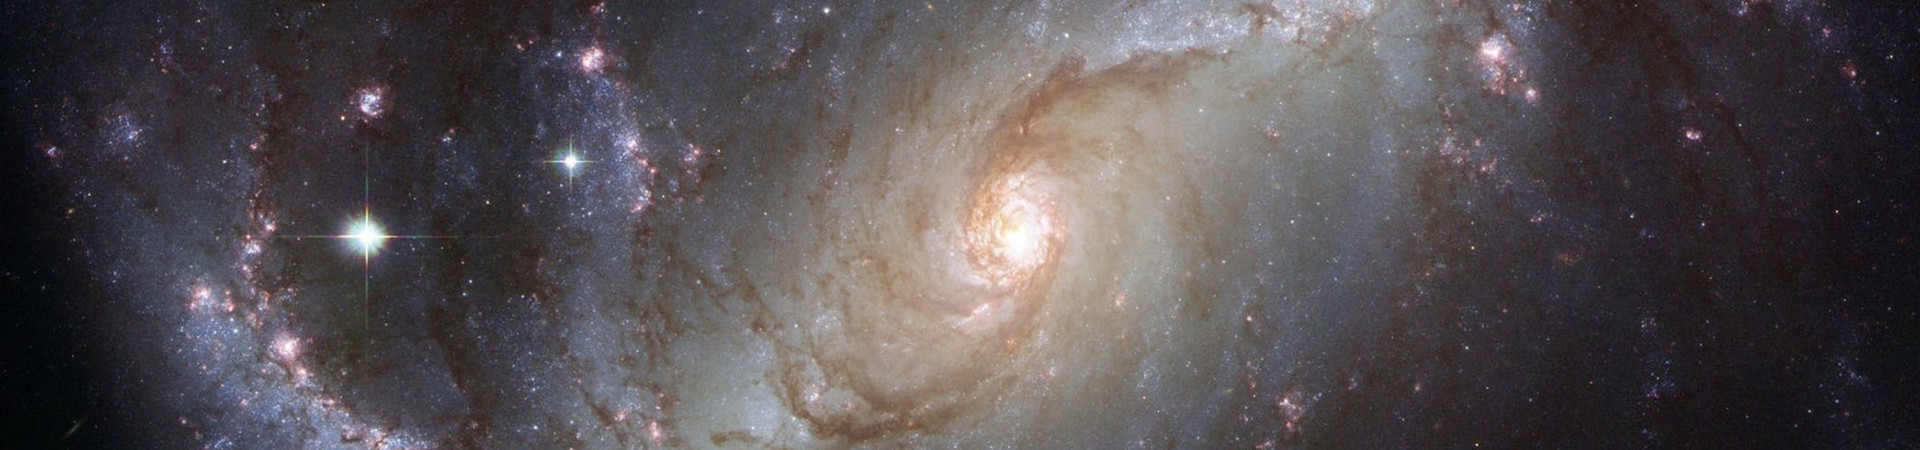 Fizika-matematika-in-astronomija/galaksija